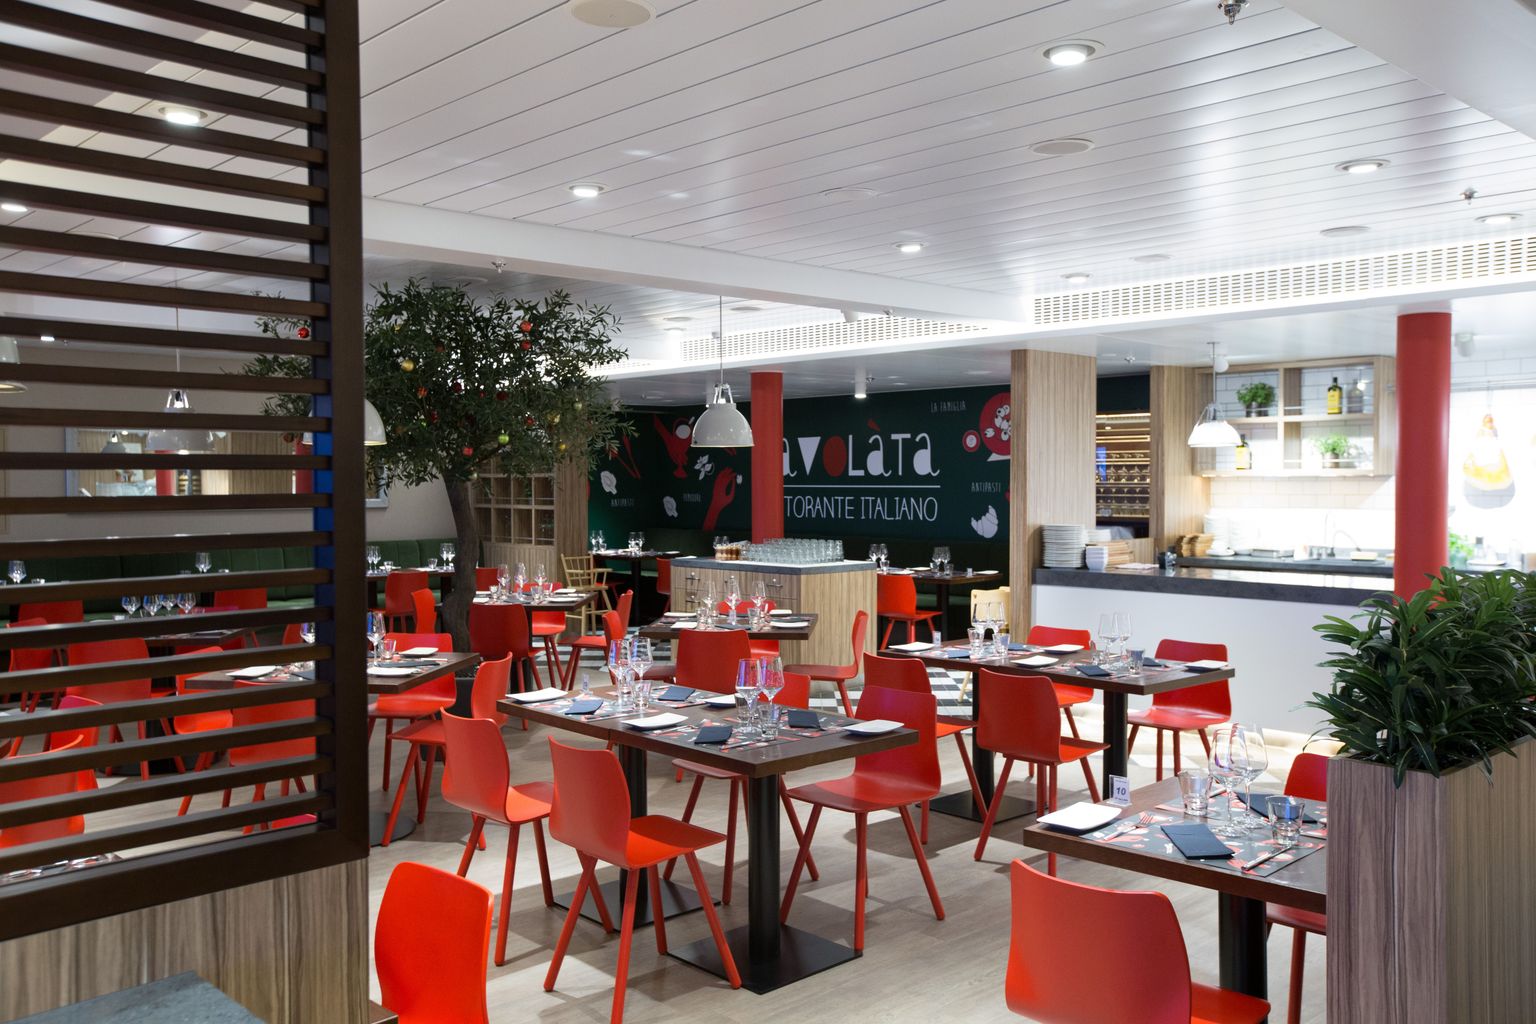 Ресторан итальянской кухни Travolata получил ярко-красные эргономичные стулья.